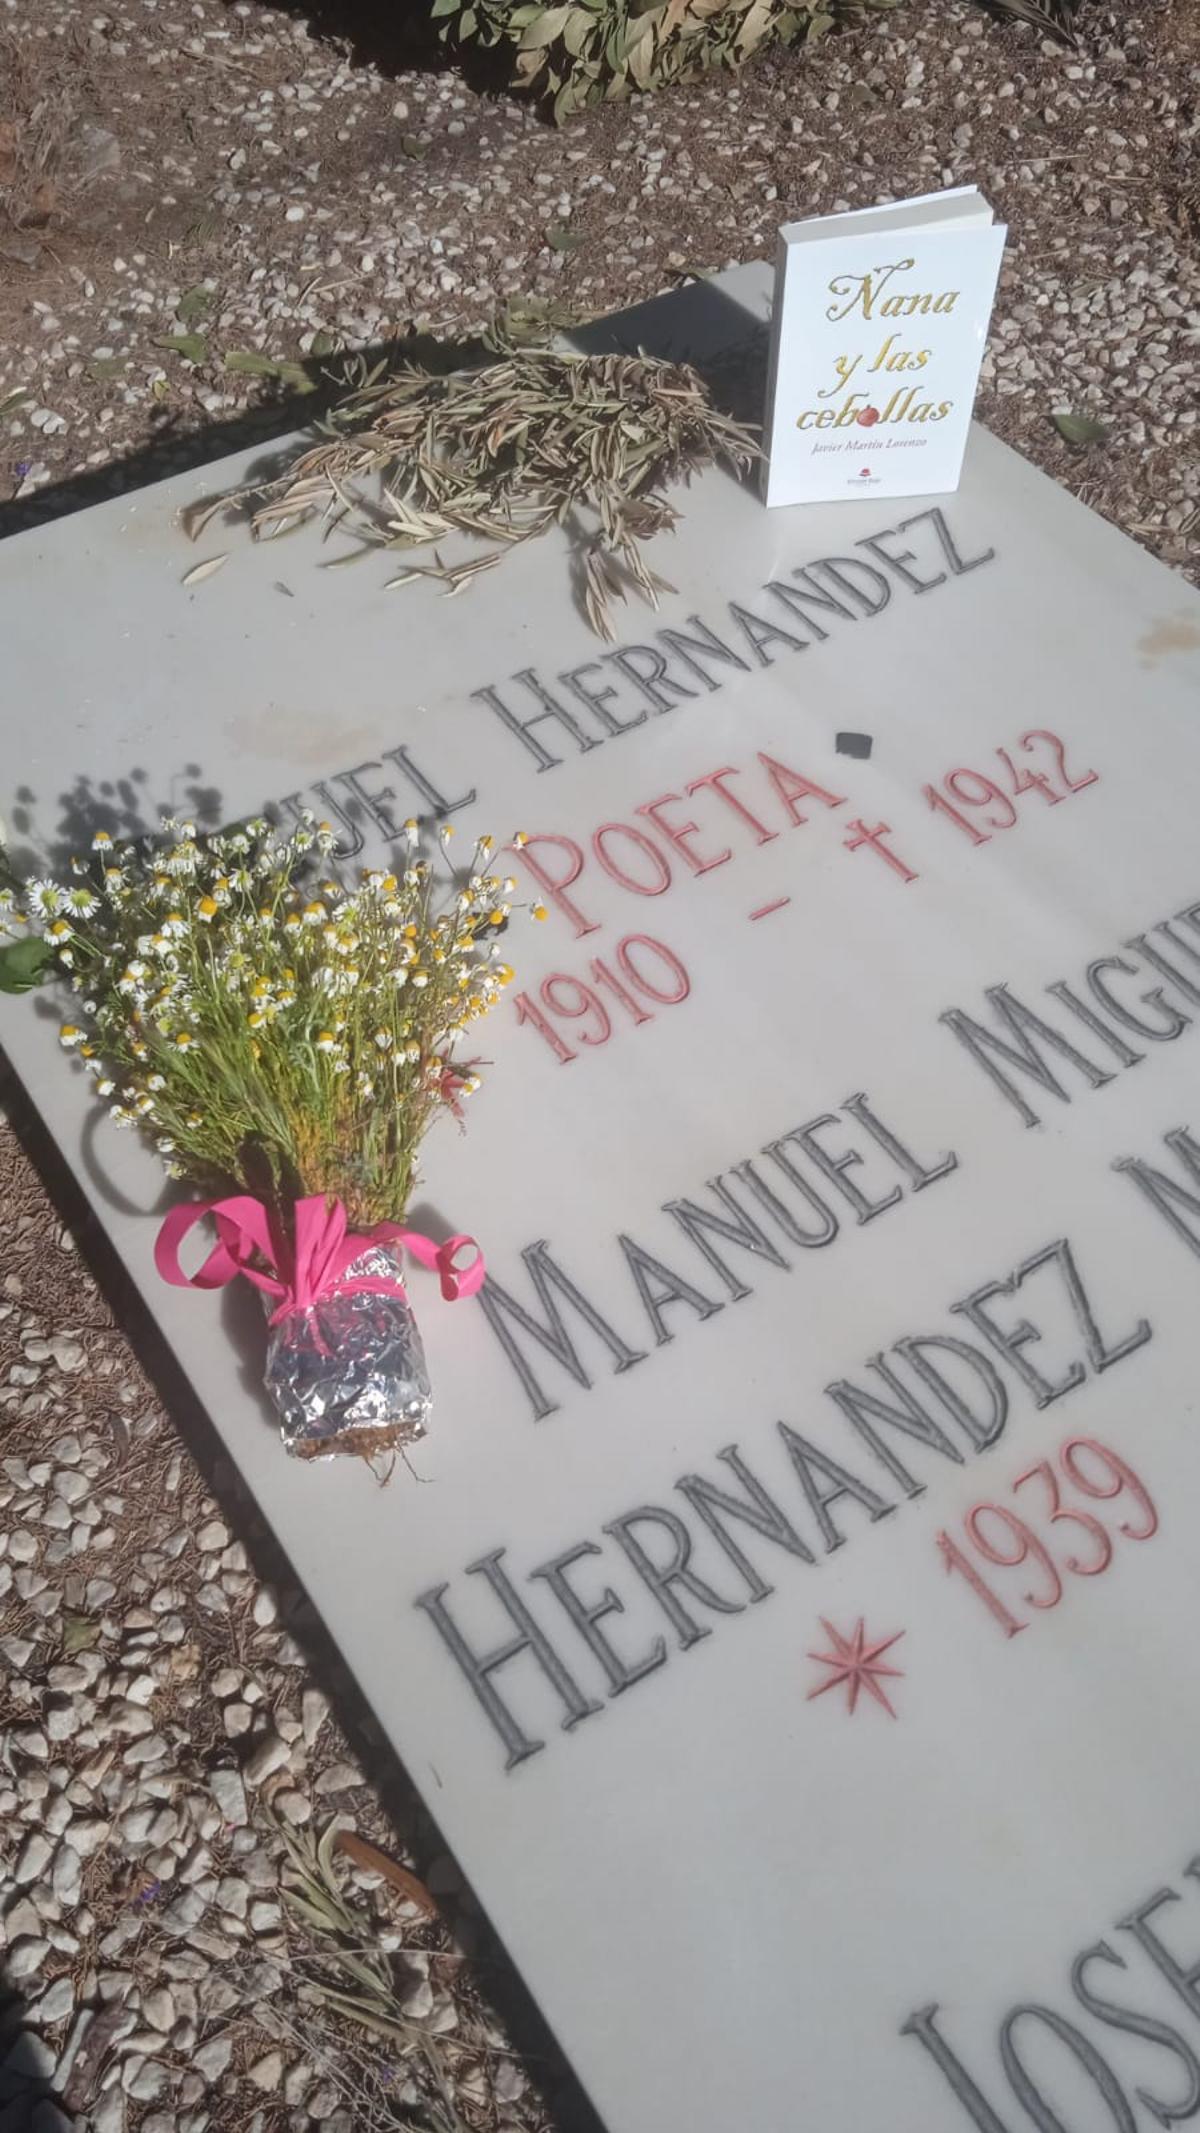 Ramillete de flores de manzanilla y el libro &quot;Nana y las cebollas&quot; que Martín depositó en la sepultura del poeta